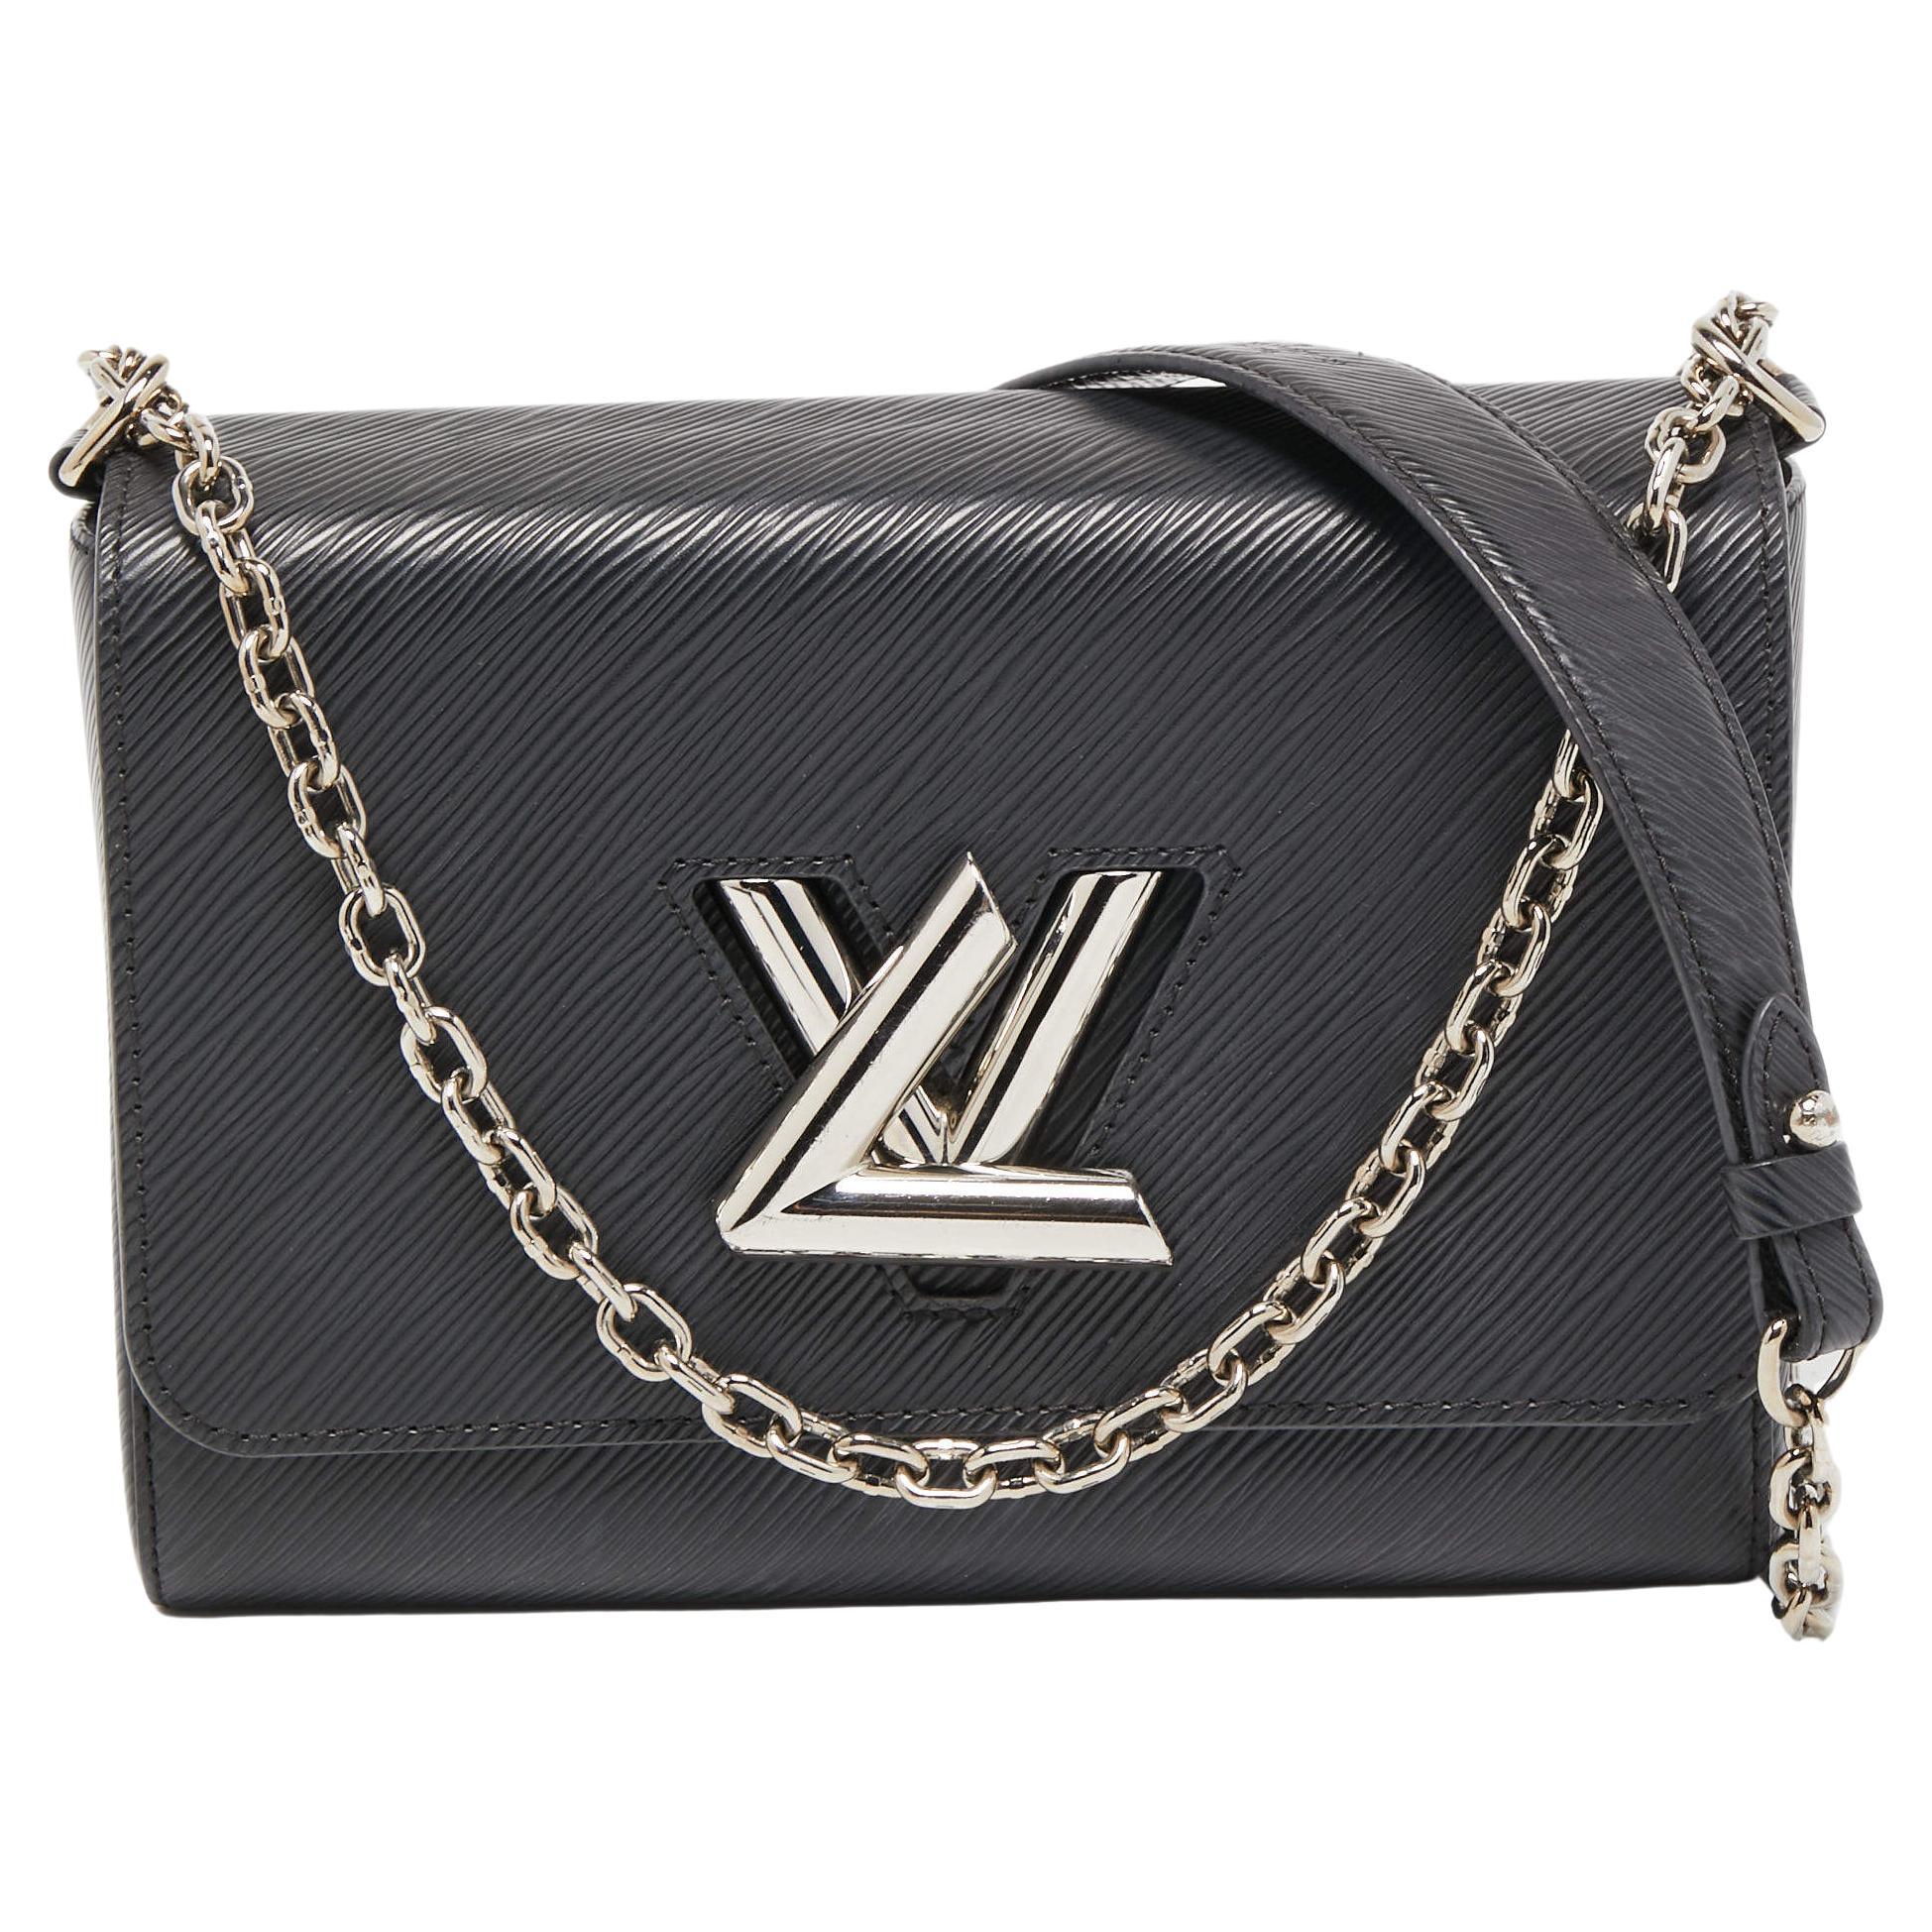 Louis Vuitton Black Epi Leather Twist MM Bag